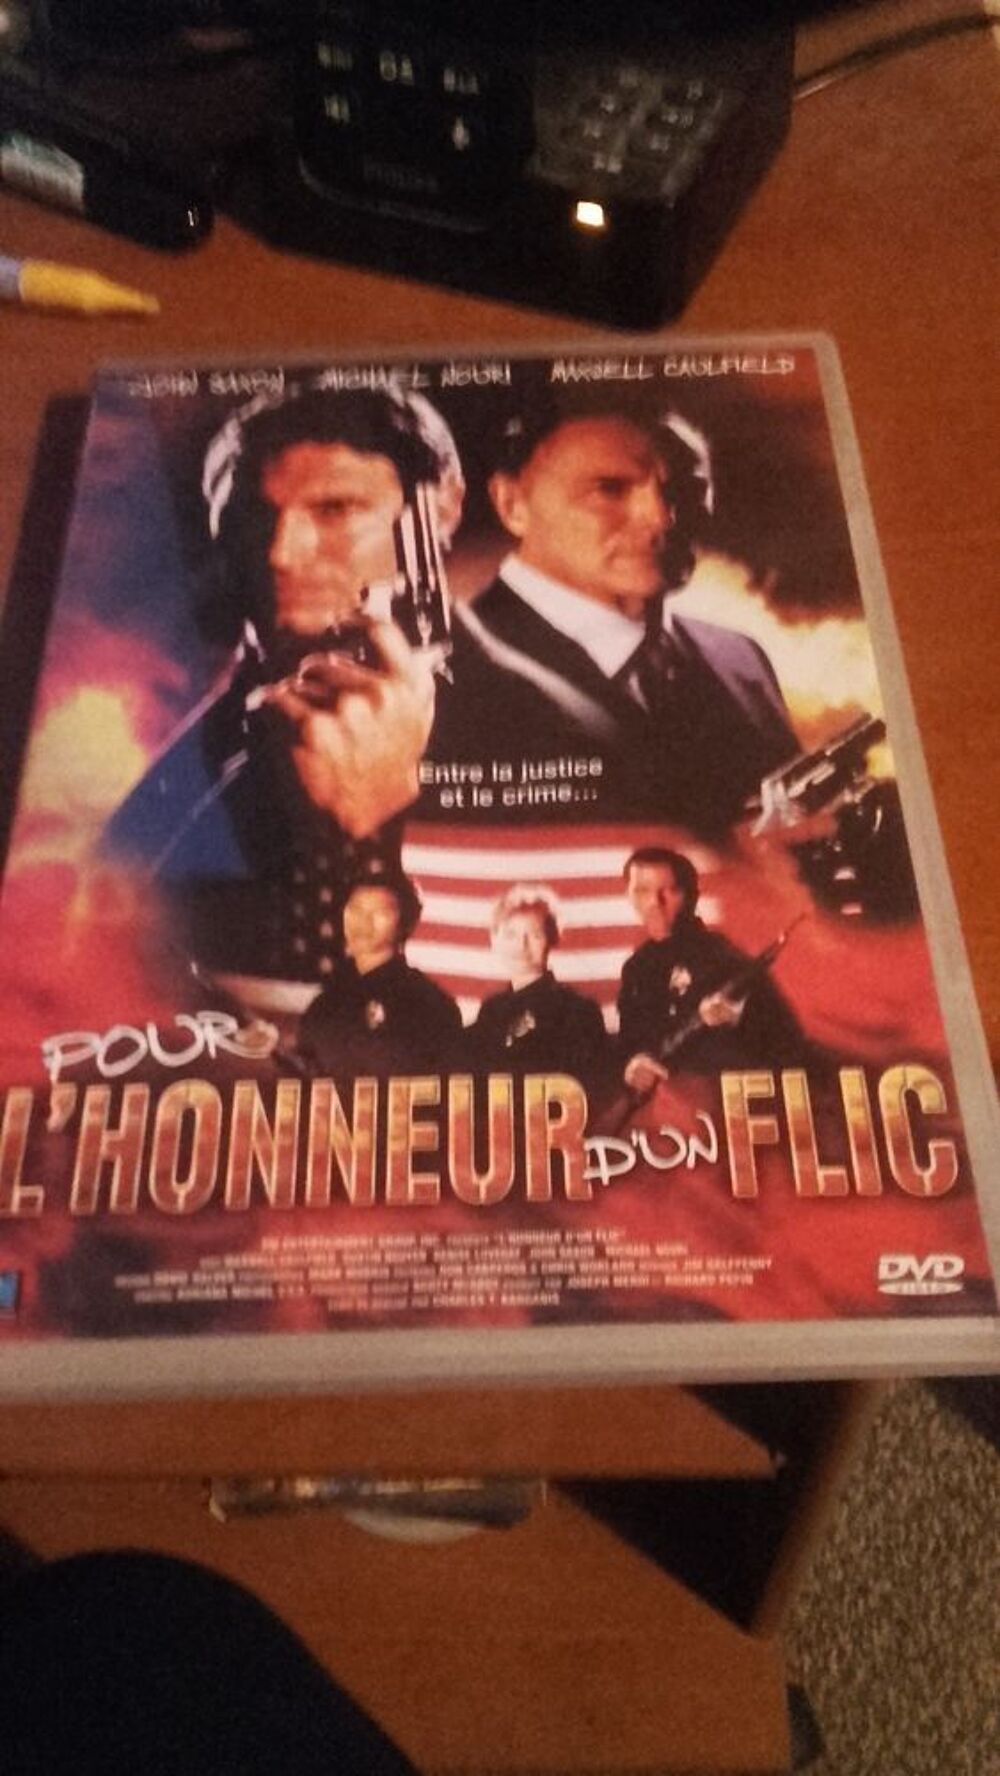 DVD Pour l'honneur d'un flic. Livraison possible DVD et blu-ray